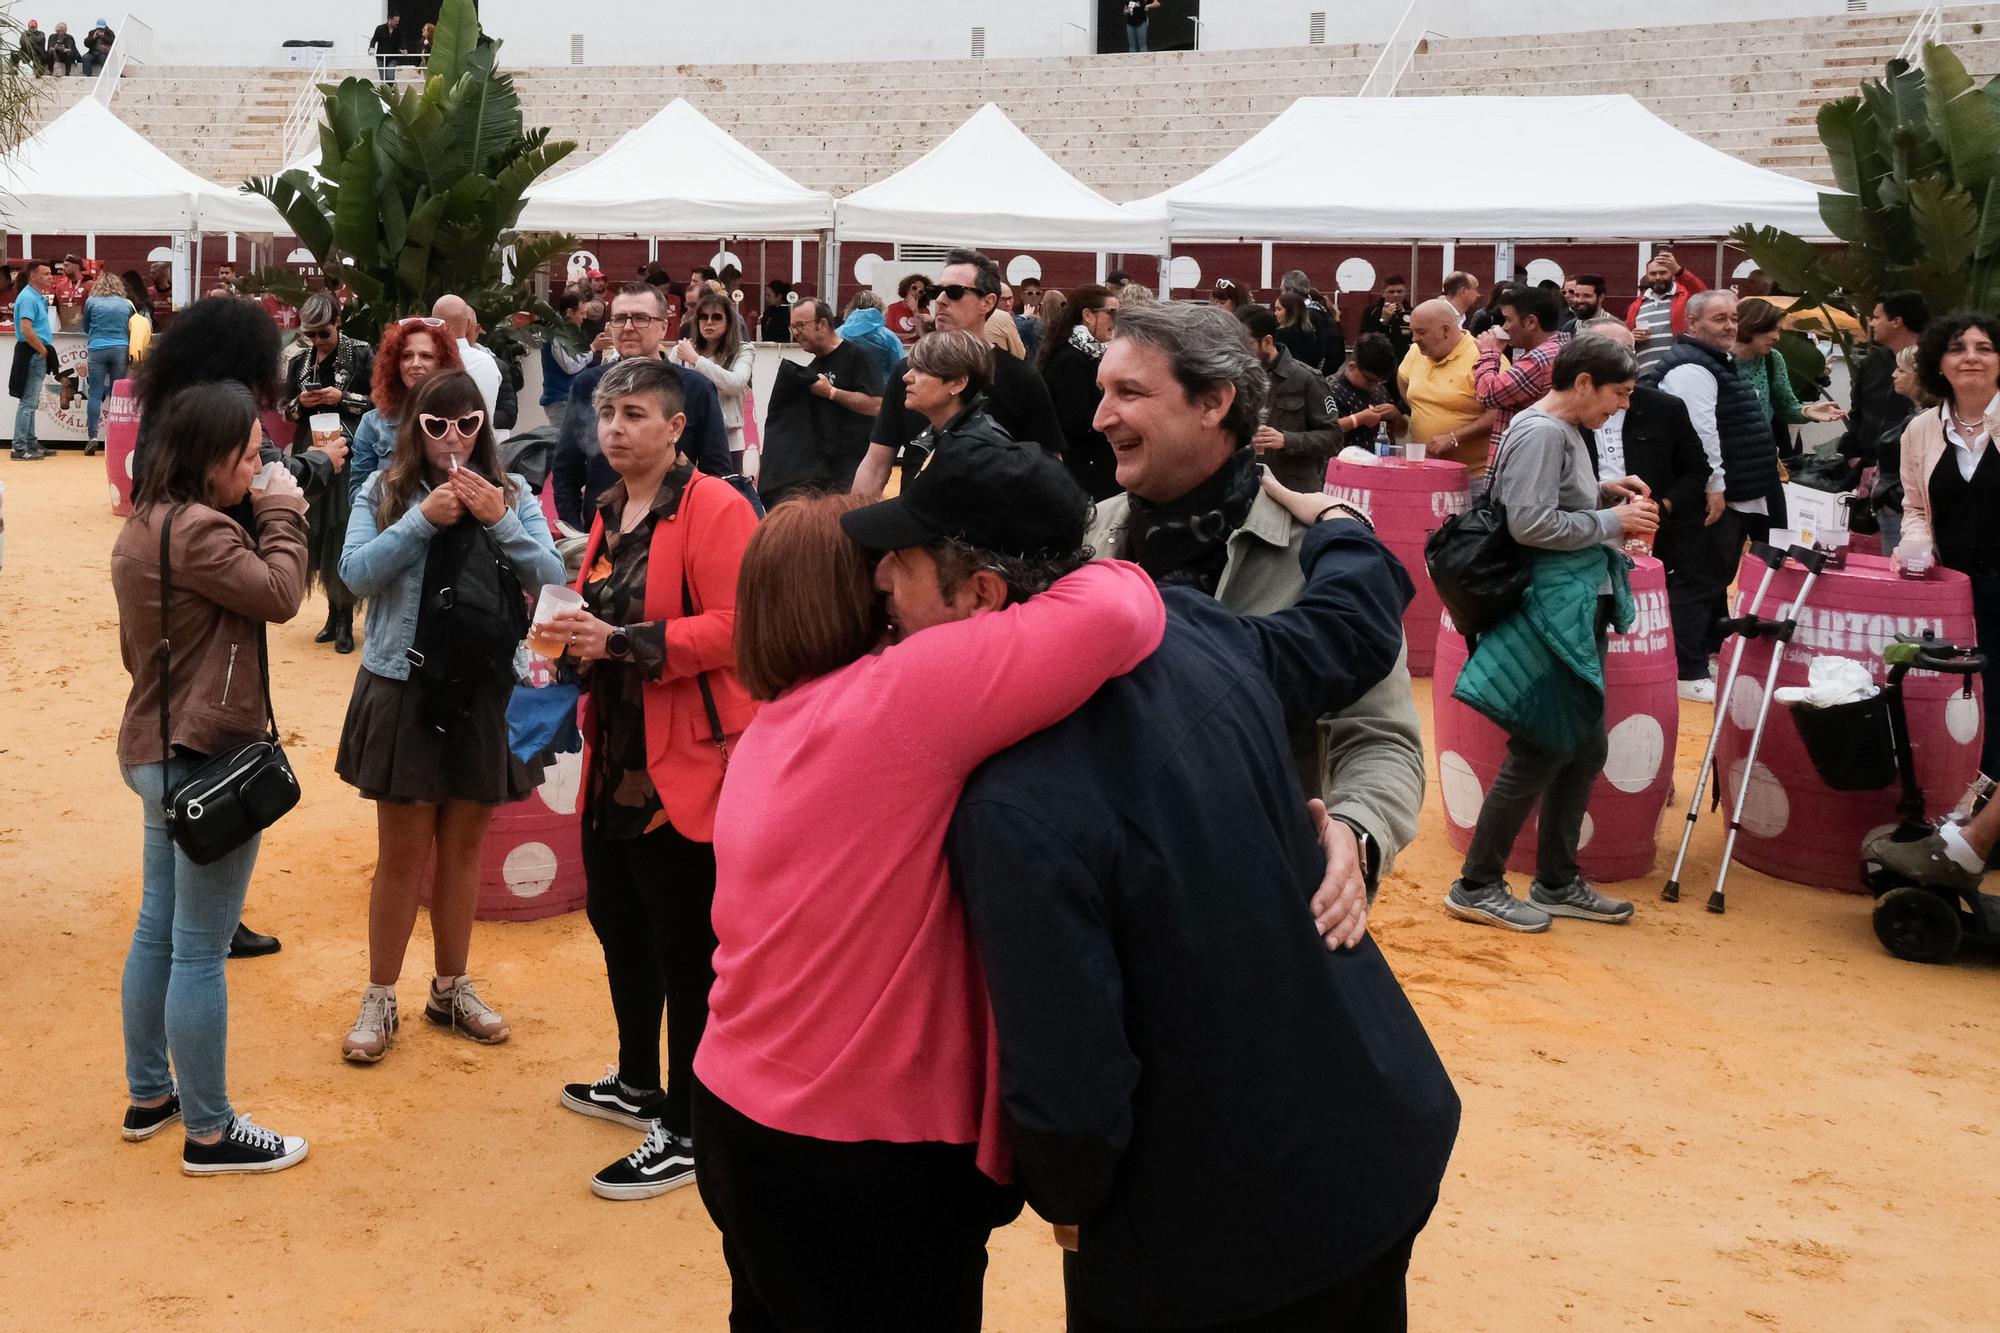 El Festival Solidario Soles de Málaga, organizado por la Fundación el Pimpi, se celebra este sábado en la Plaza de Toros de la Malagueta a beneficio de colectivos sociales y ONG, este año la mayoría de ellas relacionadas con los mayores.